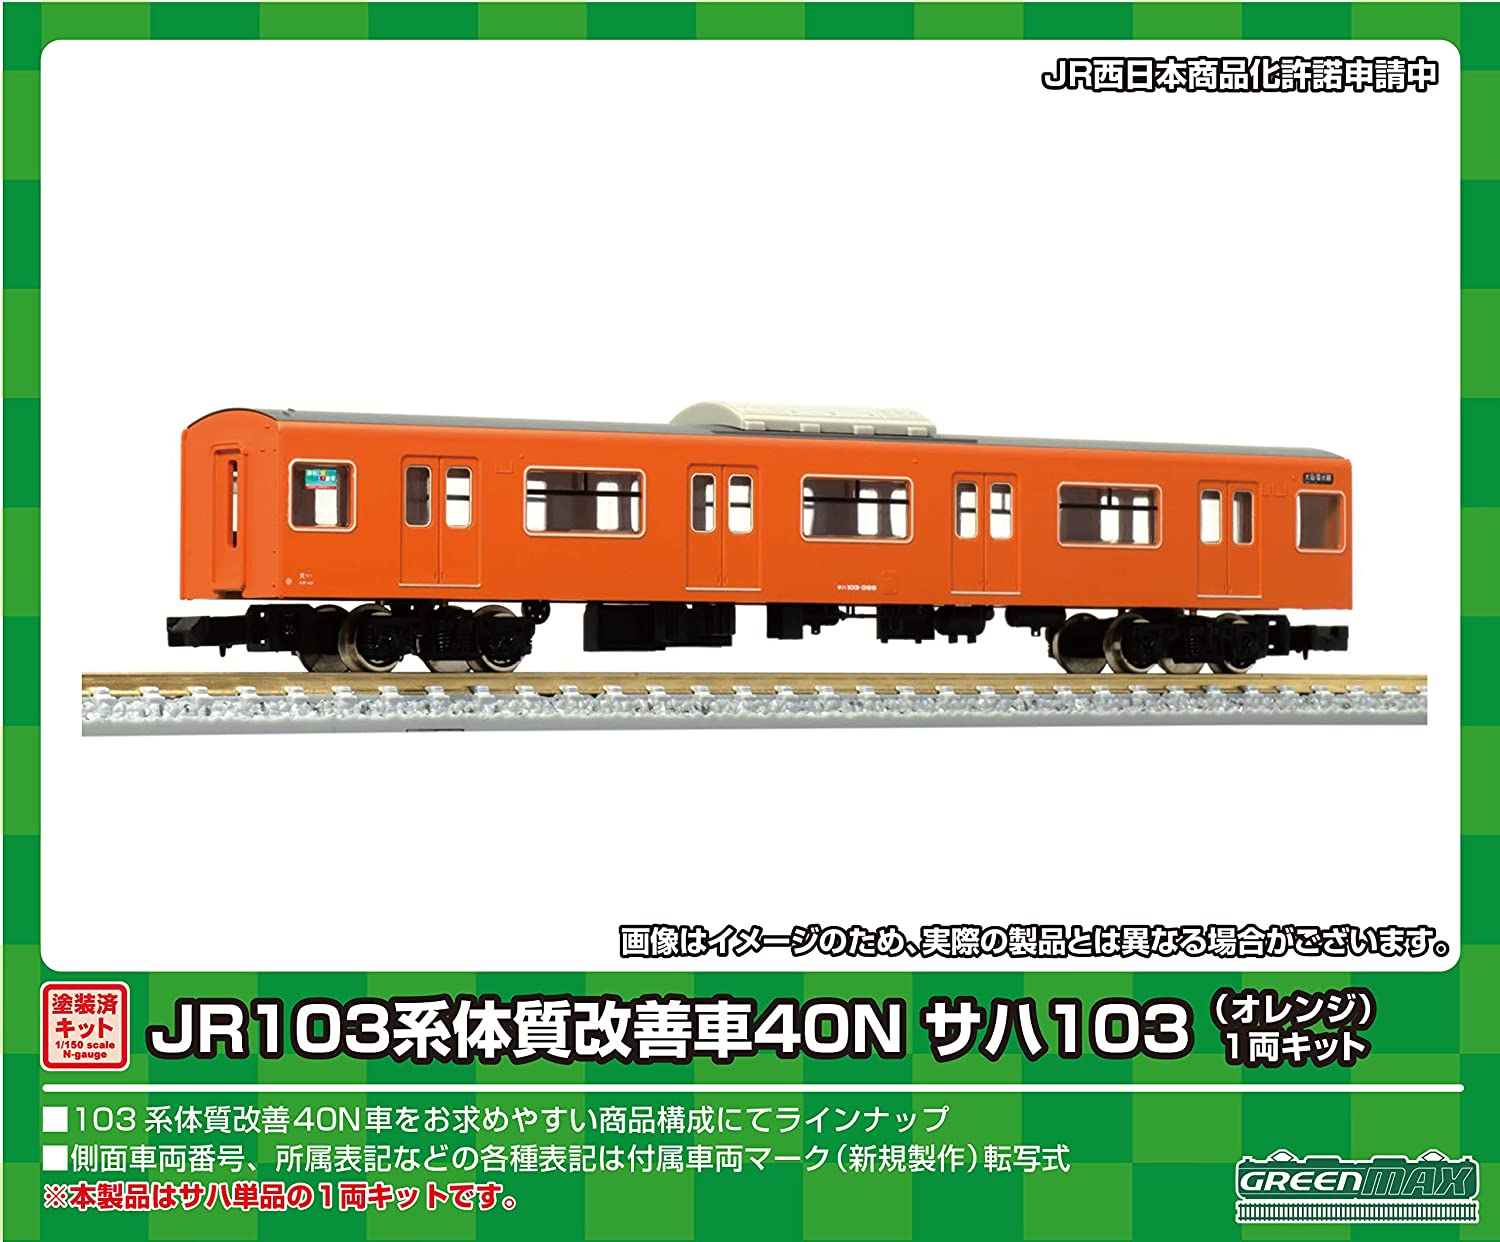 1251W J.R. Series 103 Improved Car 40N SAHA103 (Orange) One Car